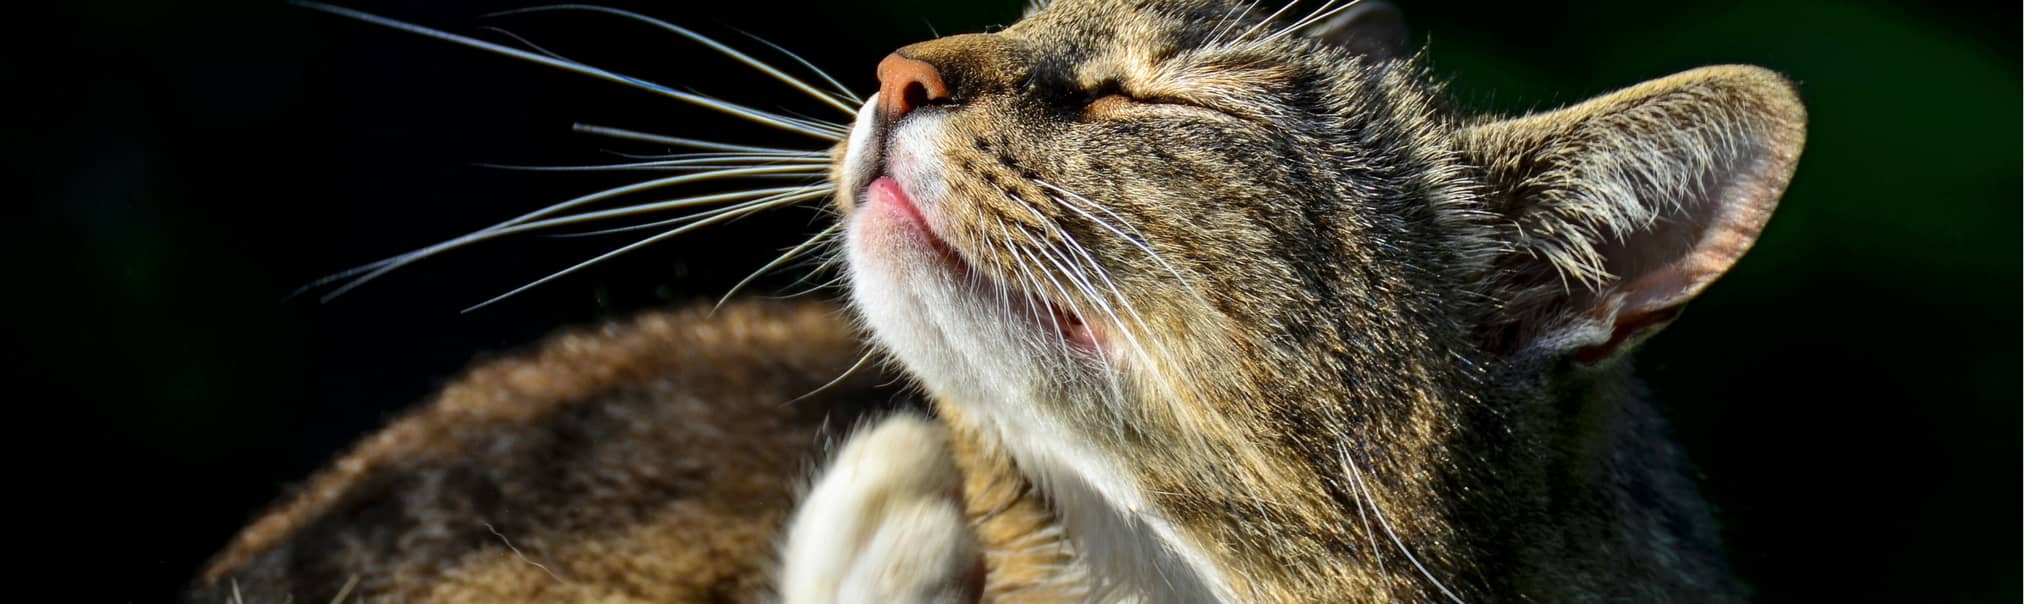 У кошки пропал голос: в чем причина и что делать, почему котенок или кот хрипит, когда мяукает?